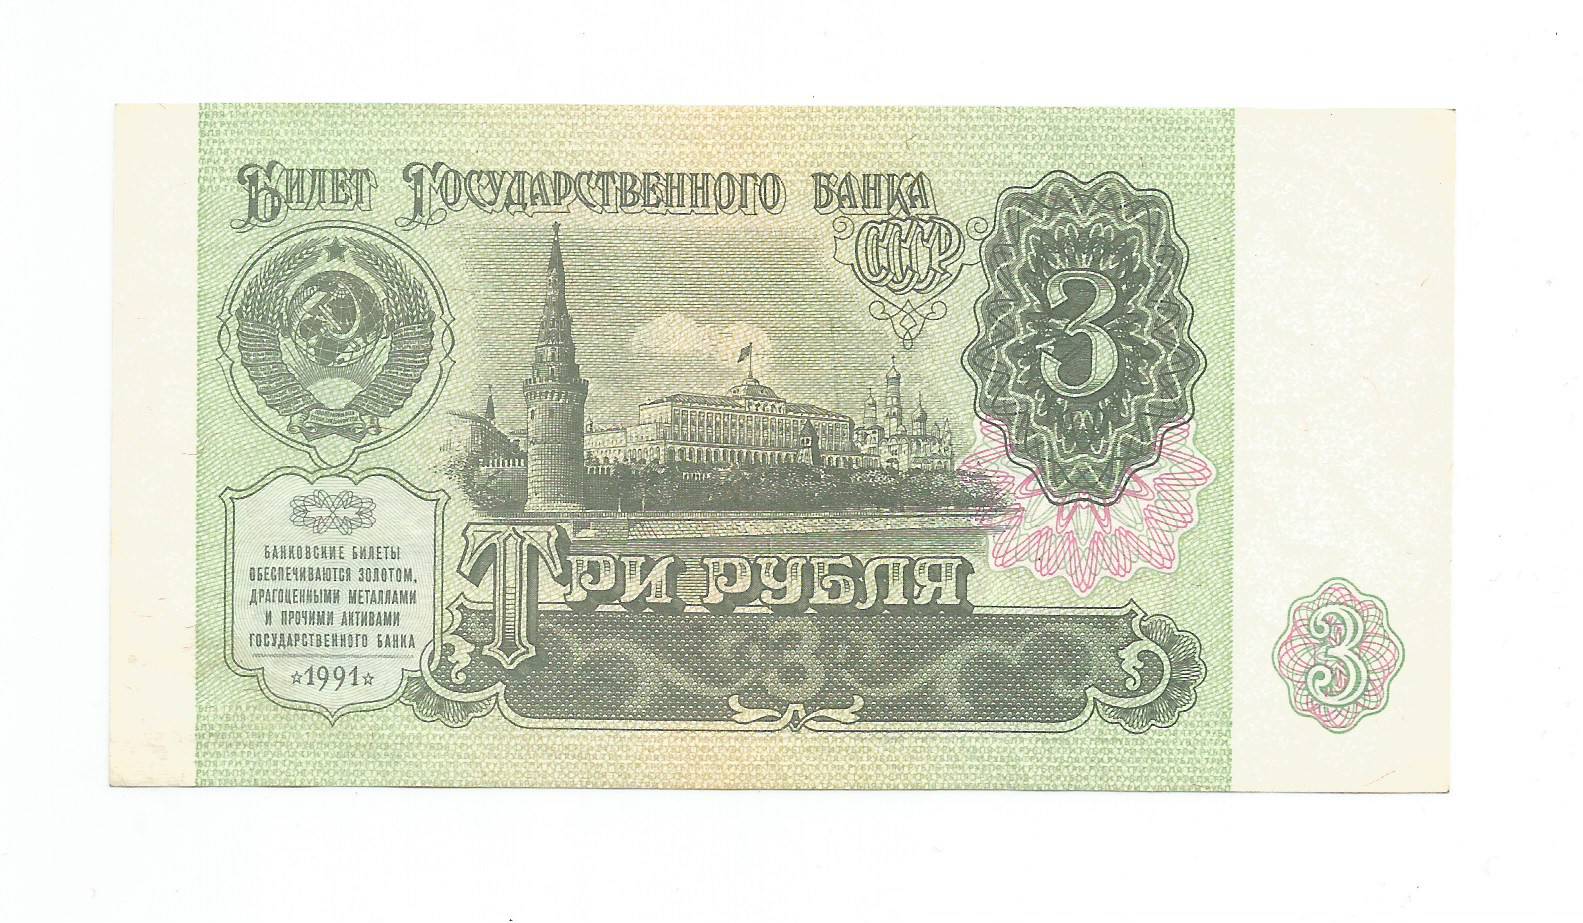 Три рубля 1961